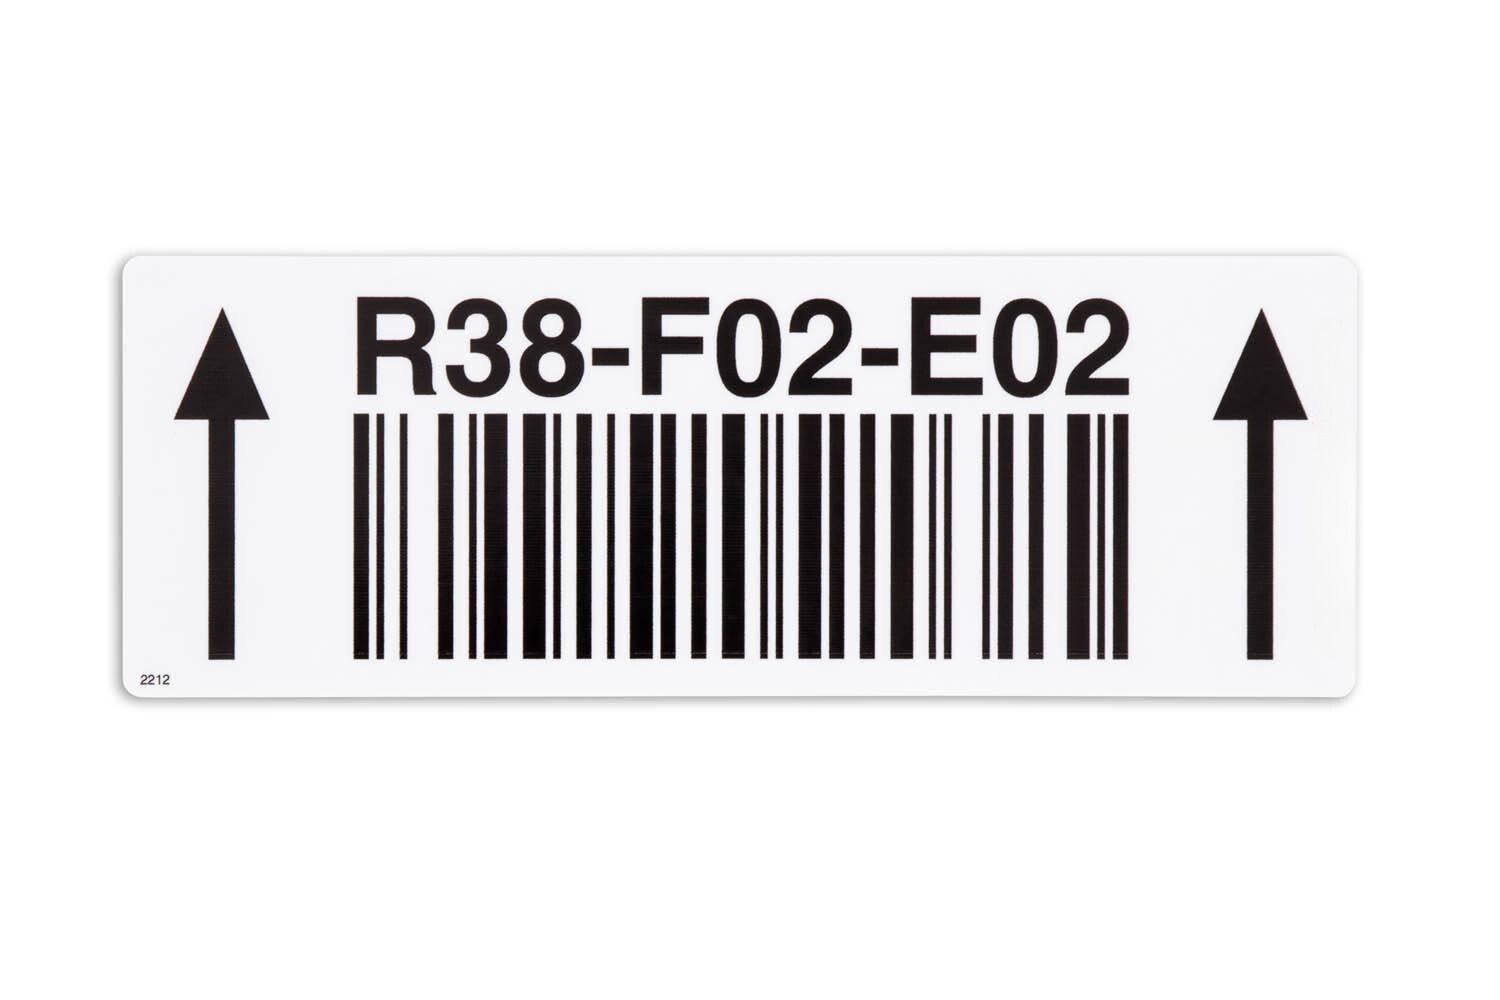 Das schnell und flexibel produzierte Barcode-Etikett in weiß